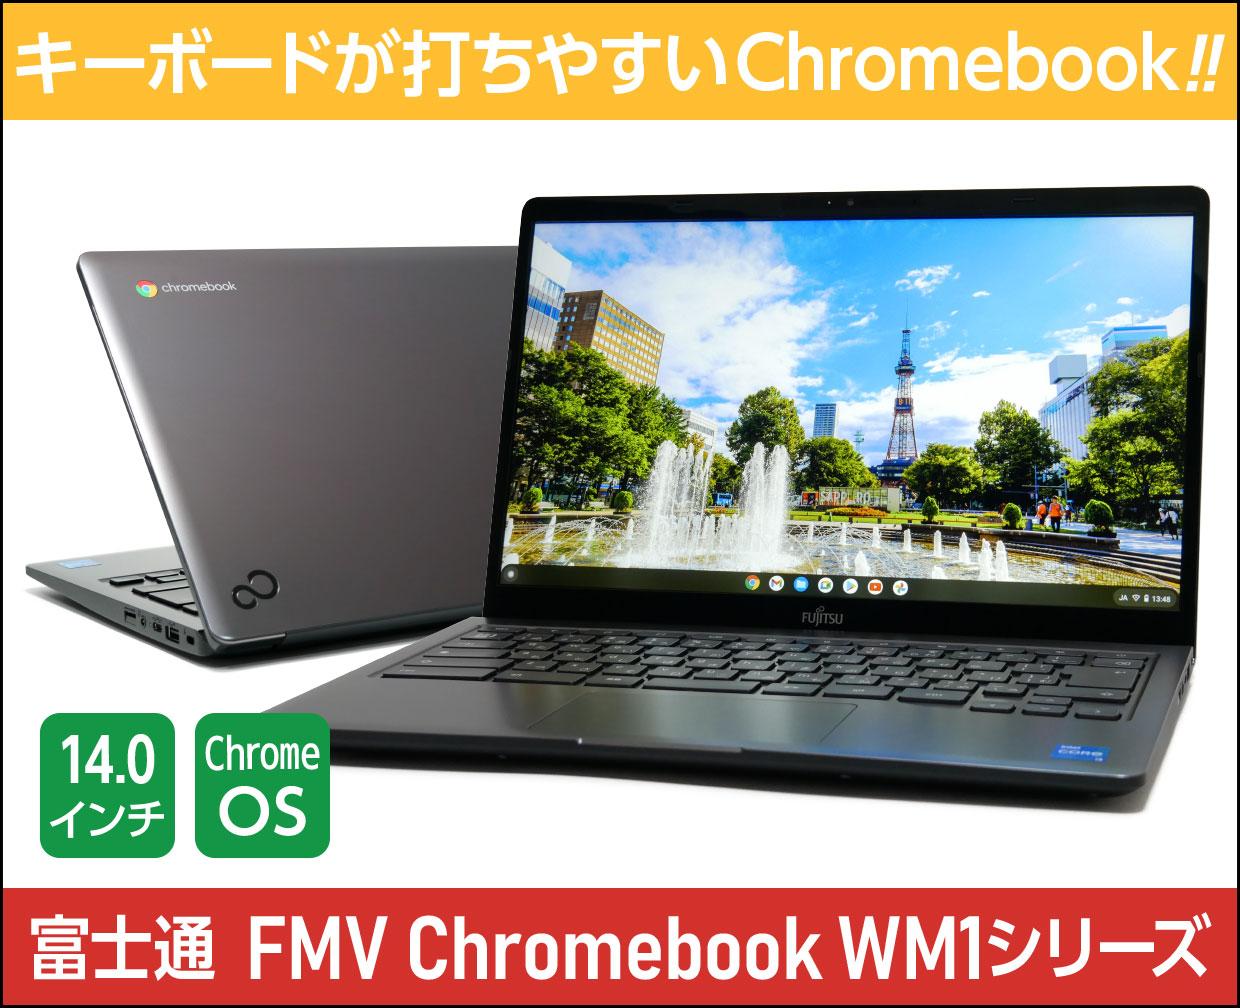 富士通 FMV Chromebook WM1/F3のメイン画像